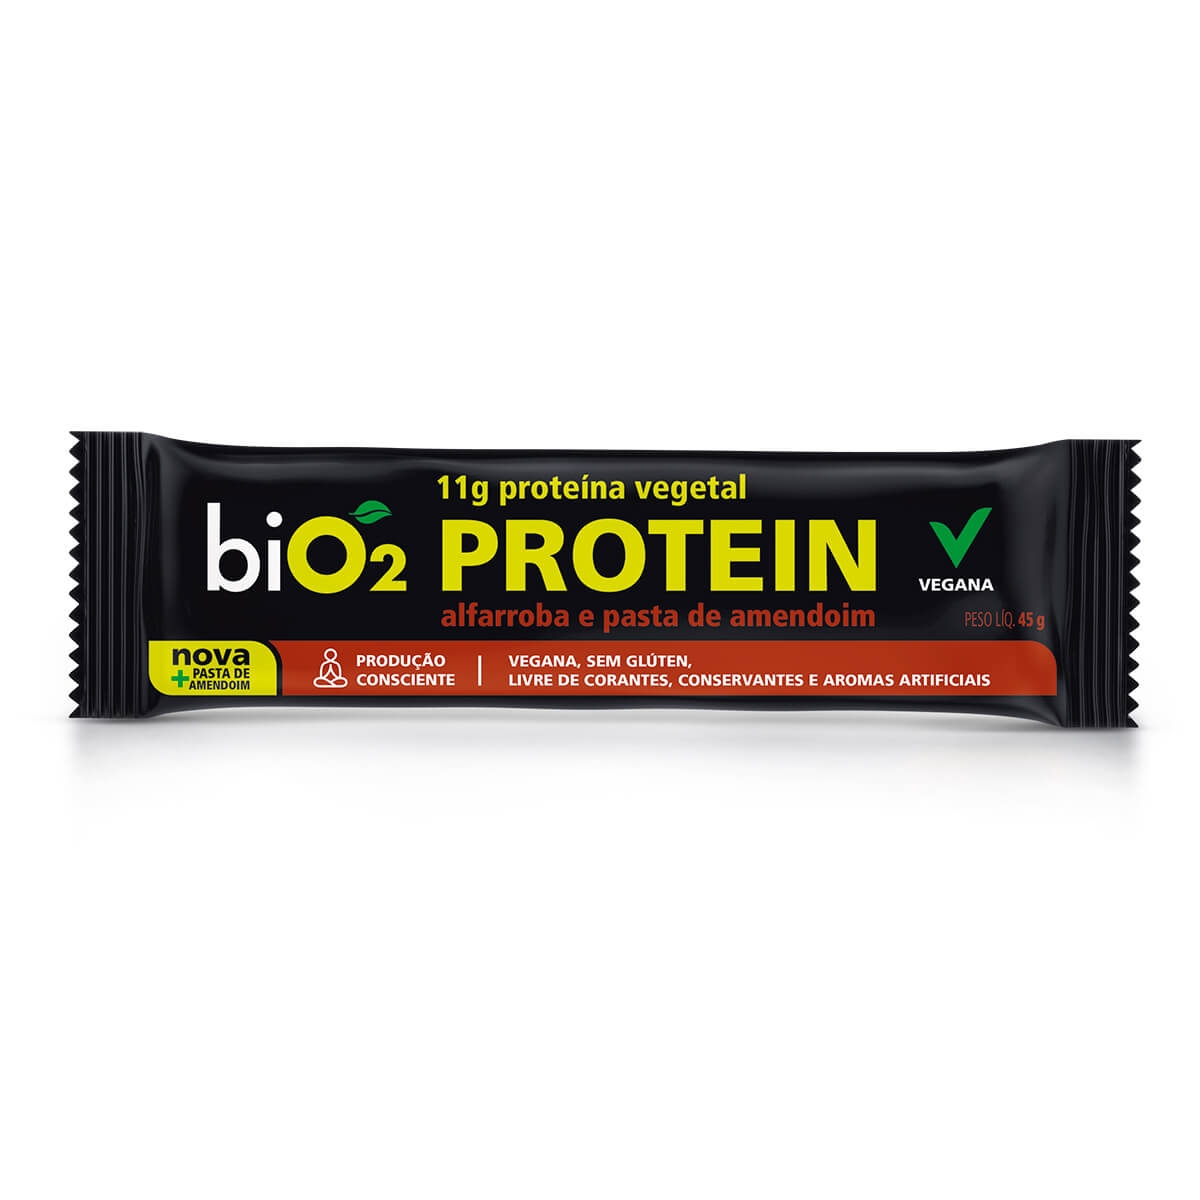 Barra de Proteína Vegana biO2 Protein Alfarroba e Pasta de Amendoim 45g